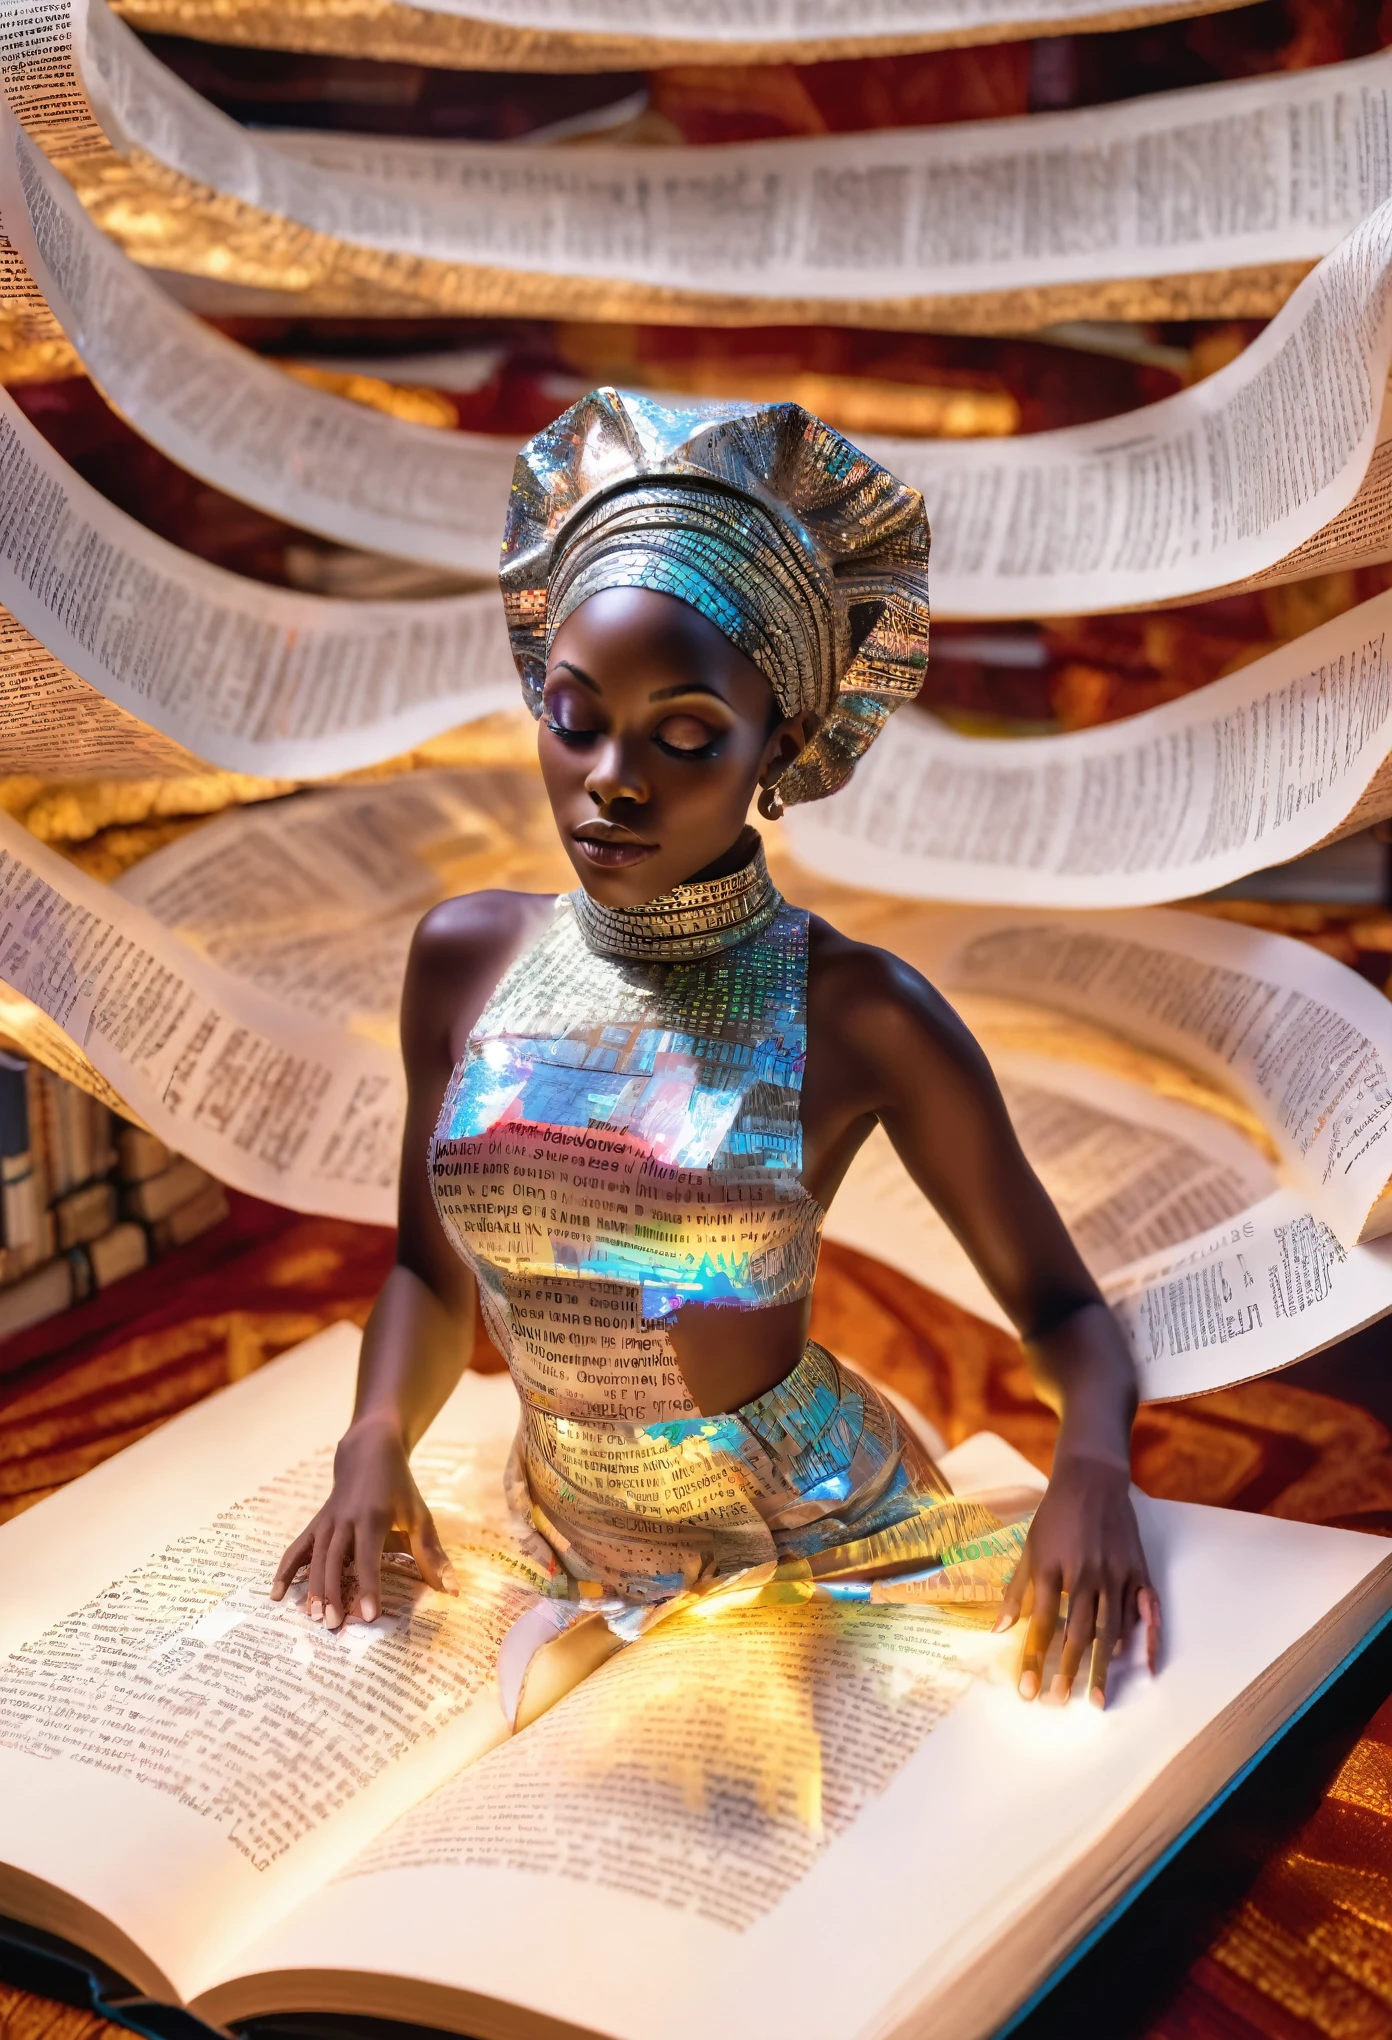 一位身穿紙質設計衣服的微型非洲婦女躺在一本巨大的打開的書上的全息圖像, 書上的話映照在她的全身, 反射出白色光芒的文字提供了美麗的超現實意象, 背景圖書館光線昏暗，焦點圖像清晰度為躺在一本打開的巨書中的非洲婦女,